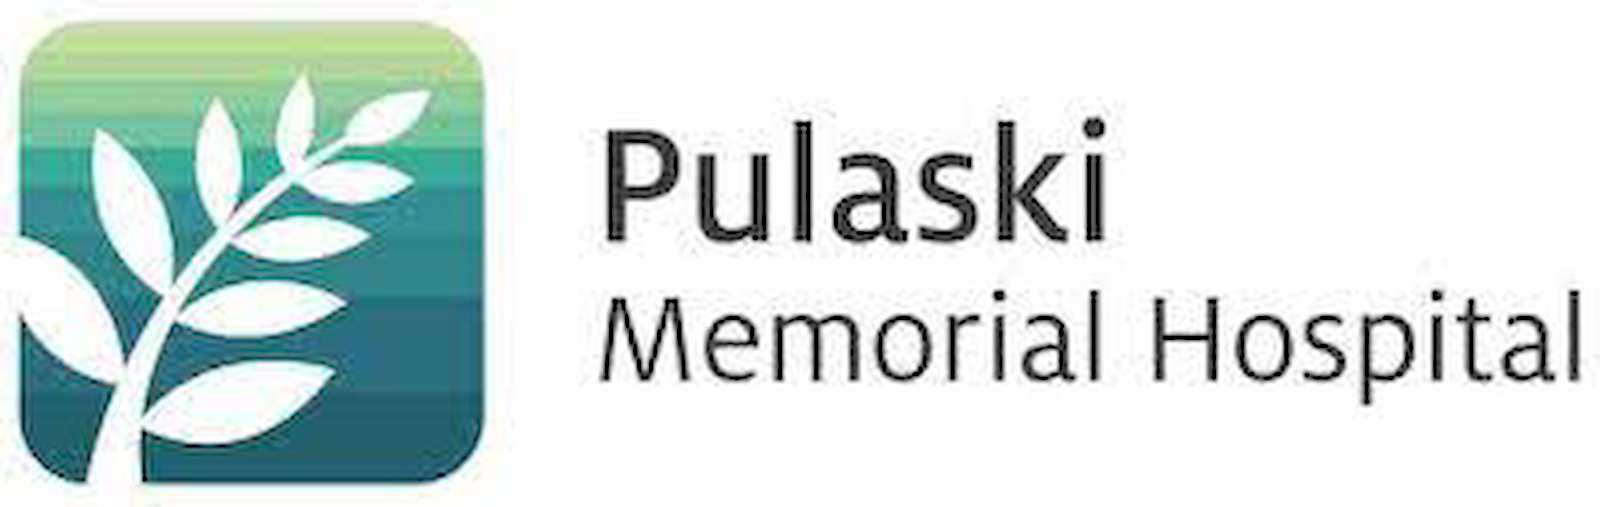 Pulaski Memorial Hospital